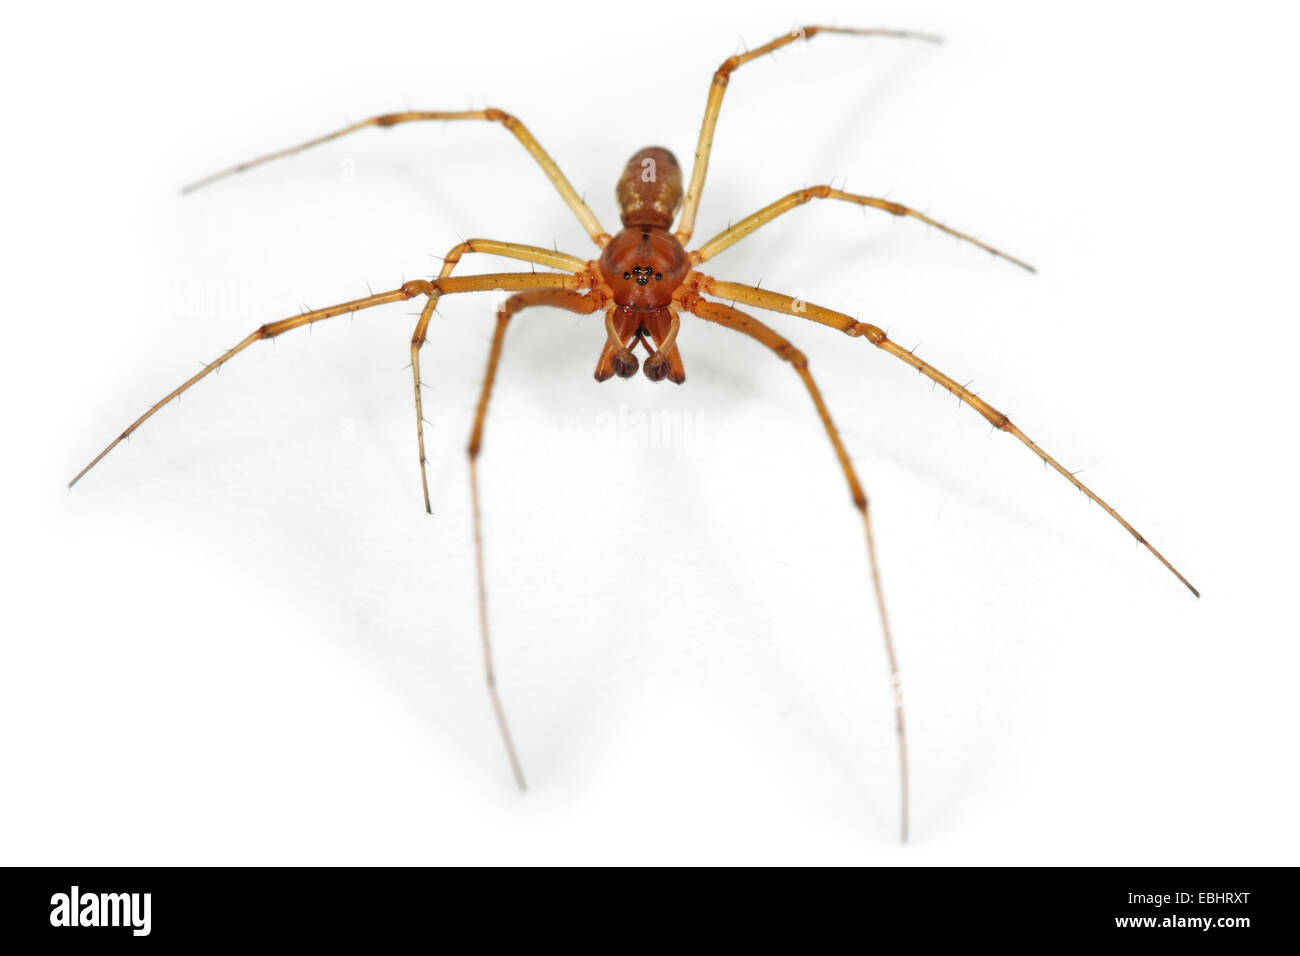 Ein männlicher Gemeinsame Hängematte - Weaver (Linyphia Triangularis) Spinne auf einem weißen Hintergrund, ein Teil der Familie - Linyphiidae Sheetweb Weber. Stockfoto